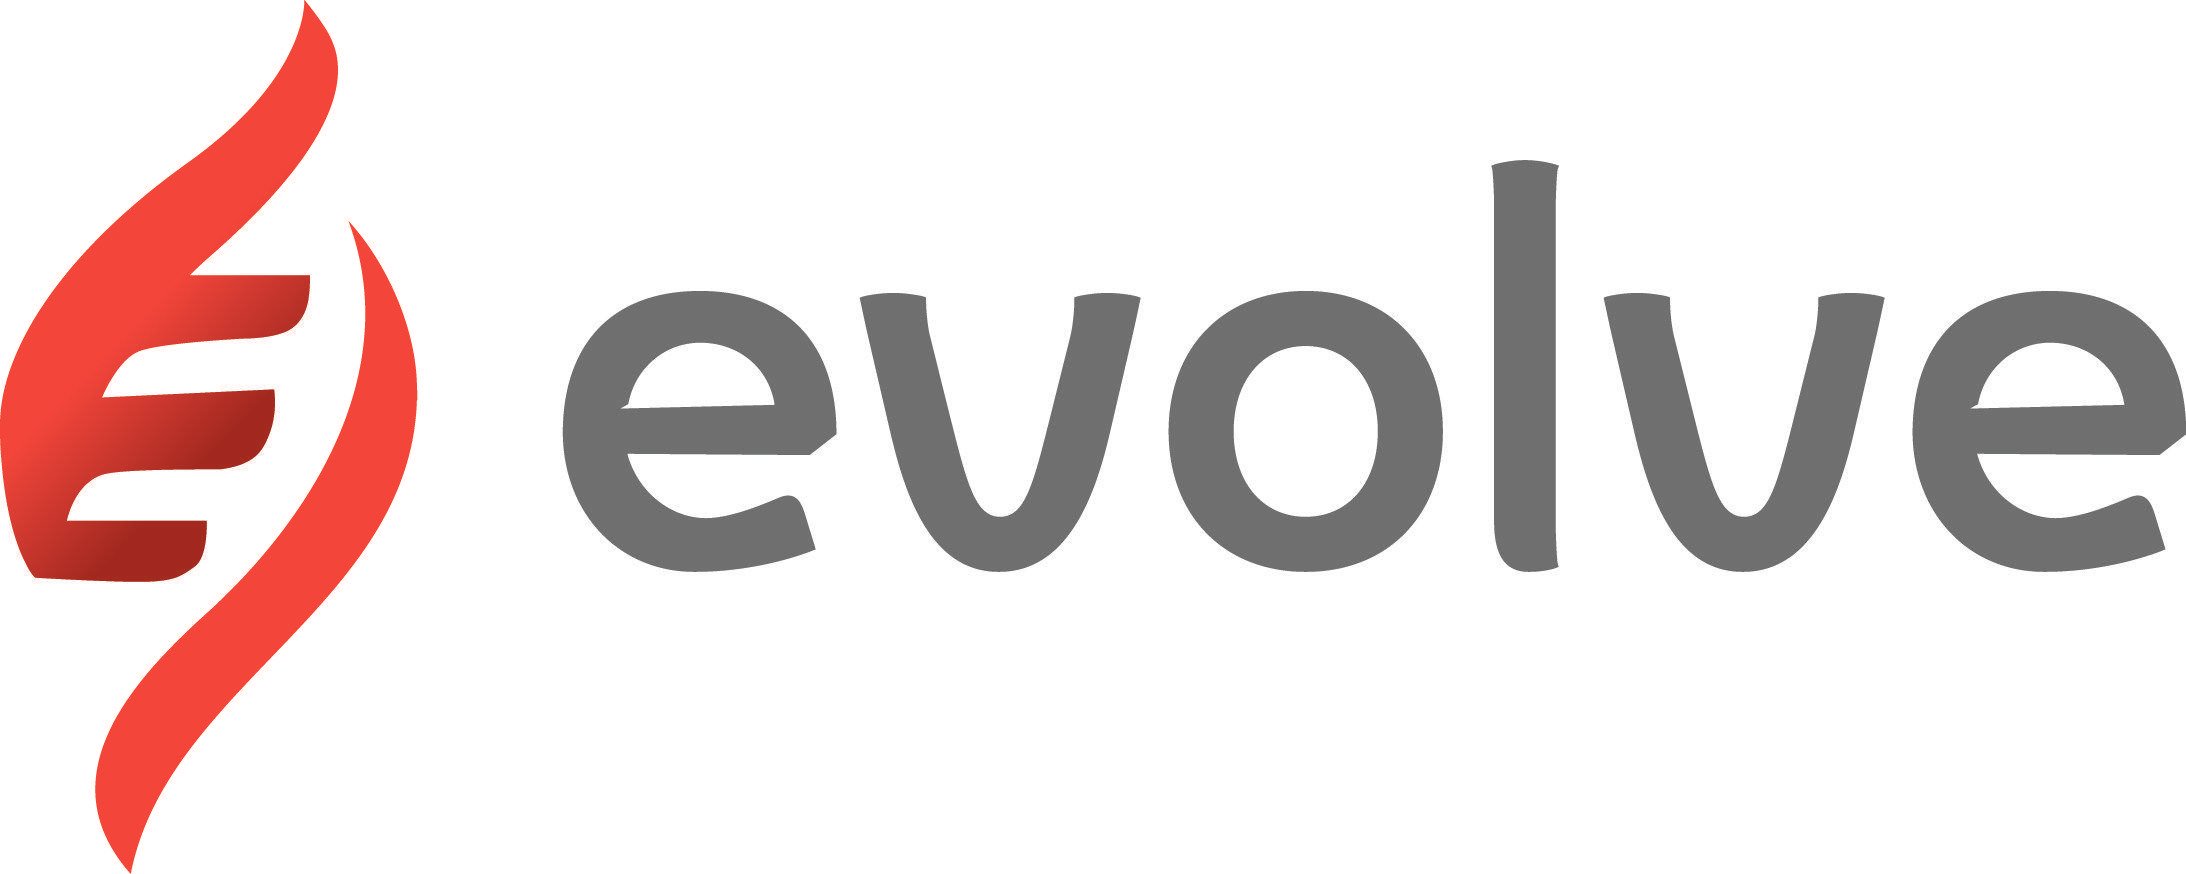 Evolve Logo - Evolve Logo Notag Final